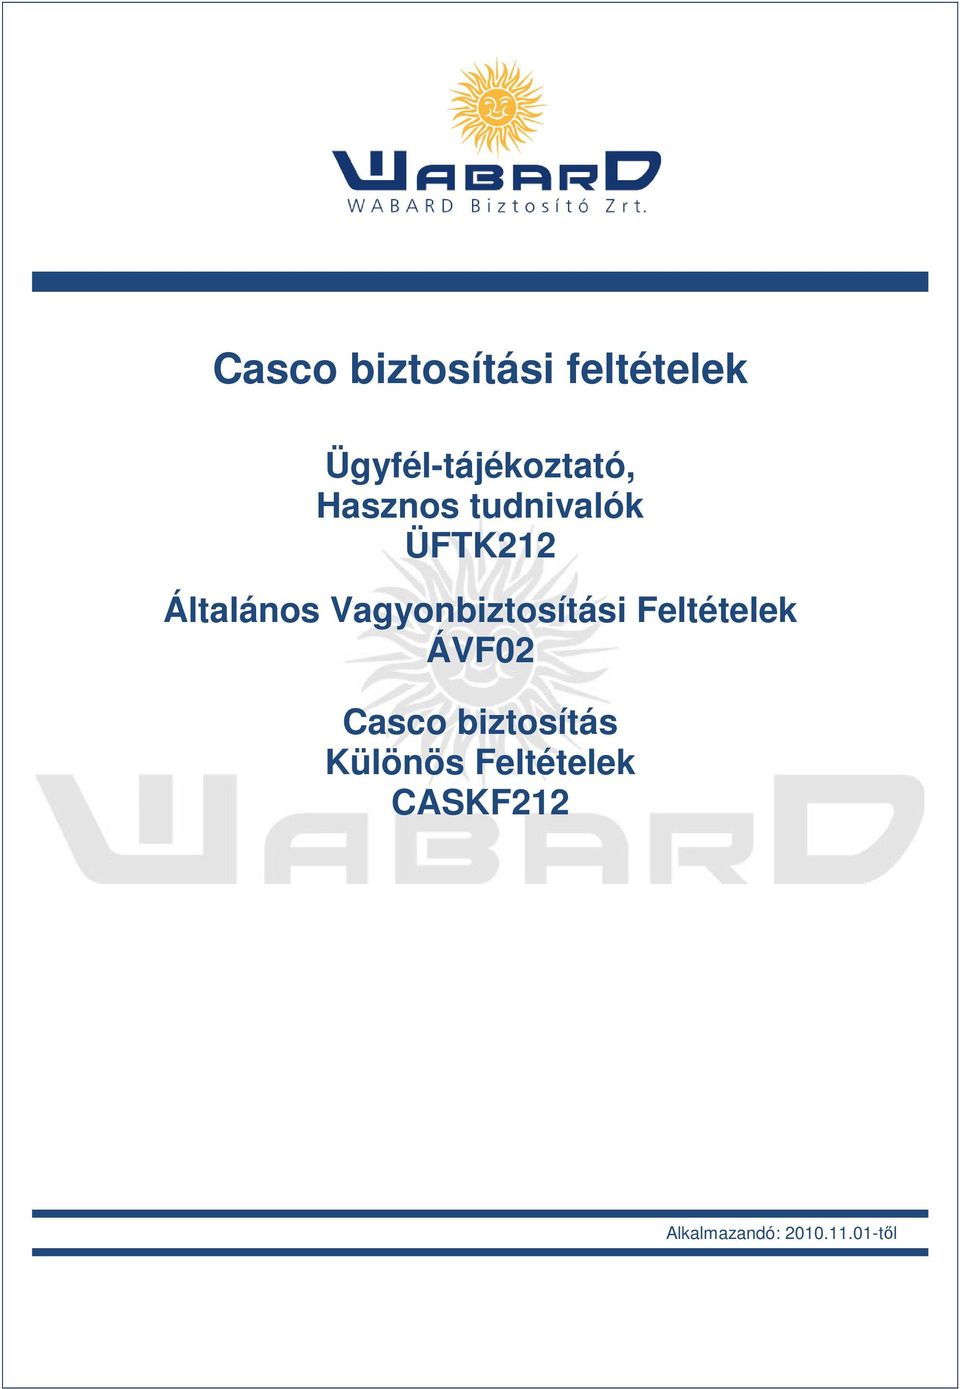 Casco biztosítási feltételek - PDF Ingyenes letöltés